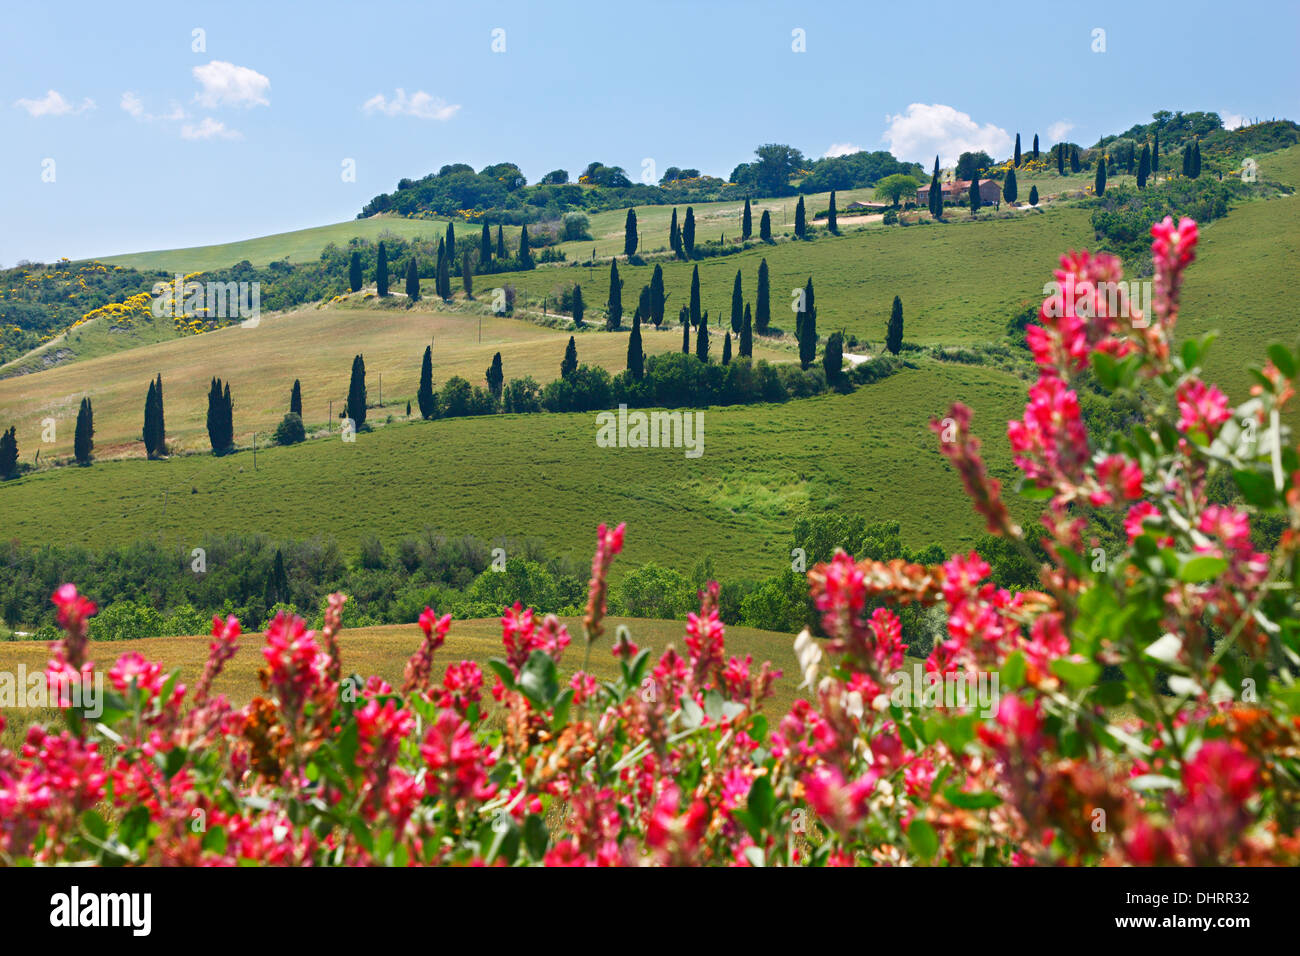 Una tortuosa strada andando in mezzo alle colline verdi con fiori nella parte anteriore, in Toscana, in provincia di Siena, Italia, Europa. Foto Stock